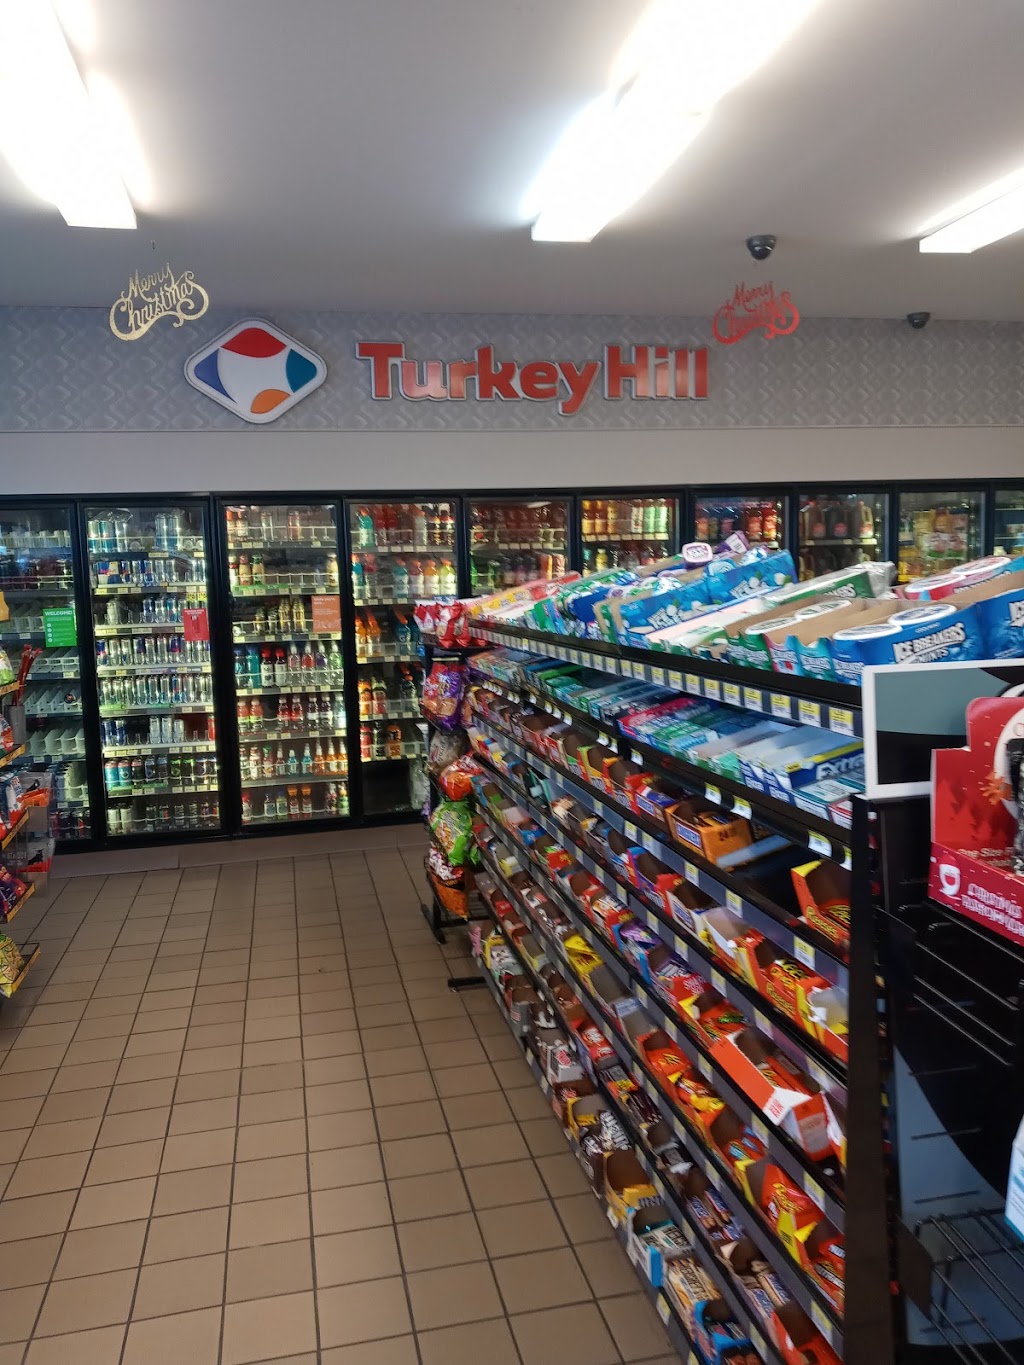 Turkey Hill Minit Market | 515 Main St, Red Hill, PA 18076 | Phone: (215) 541-0451